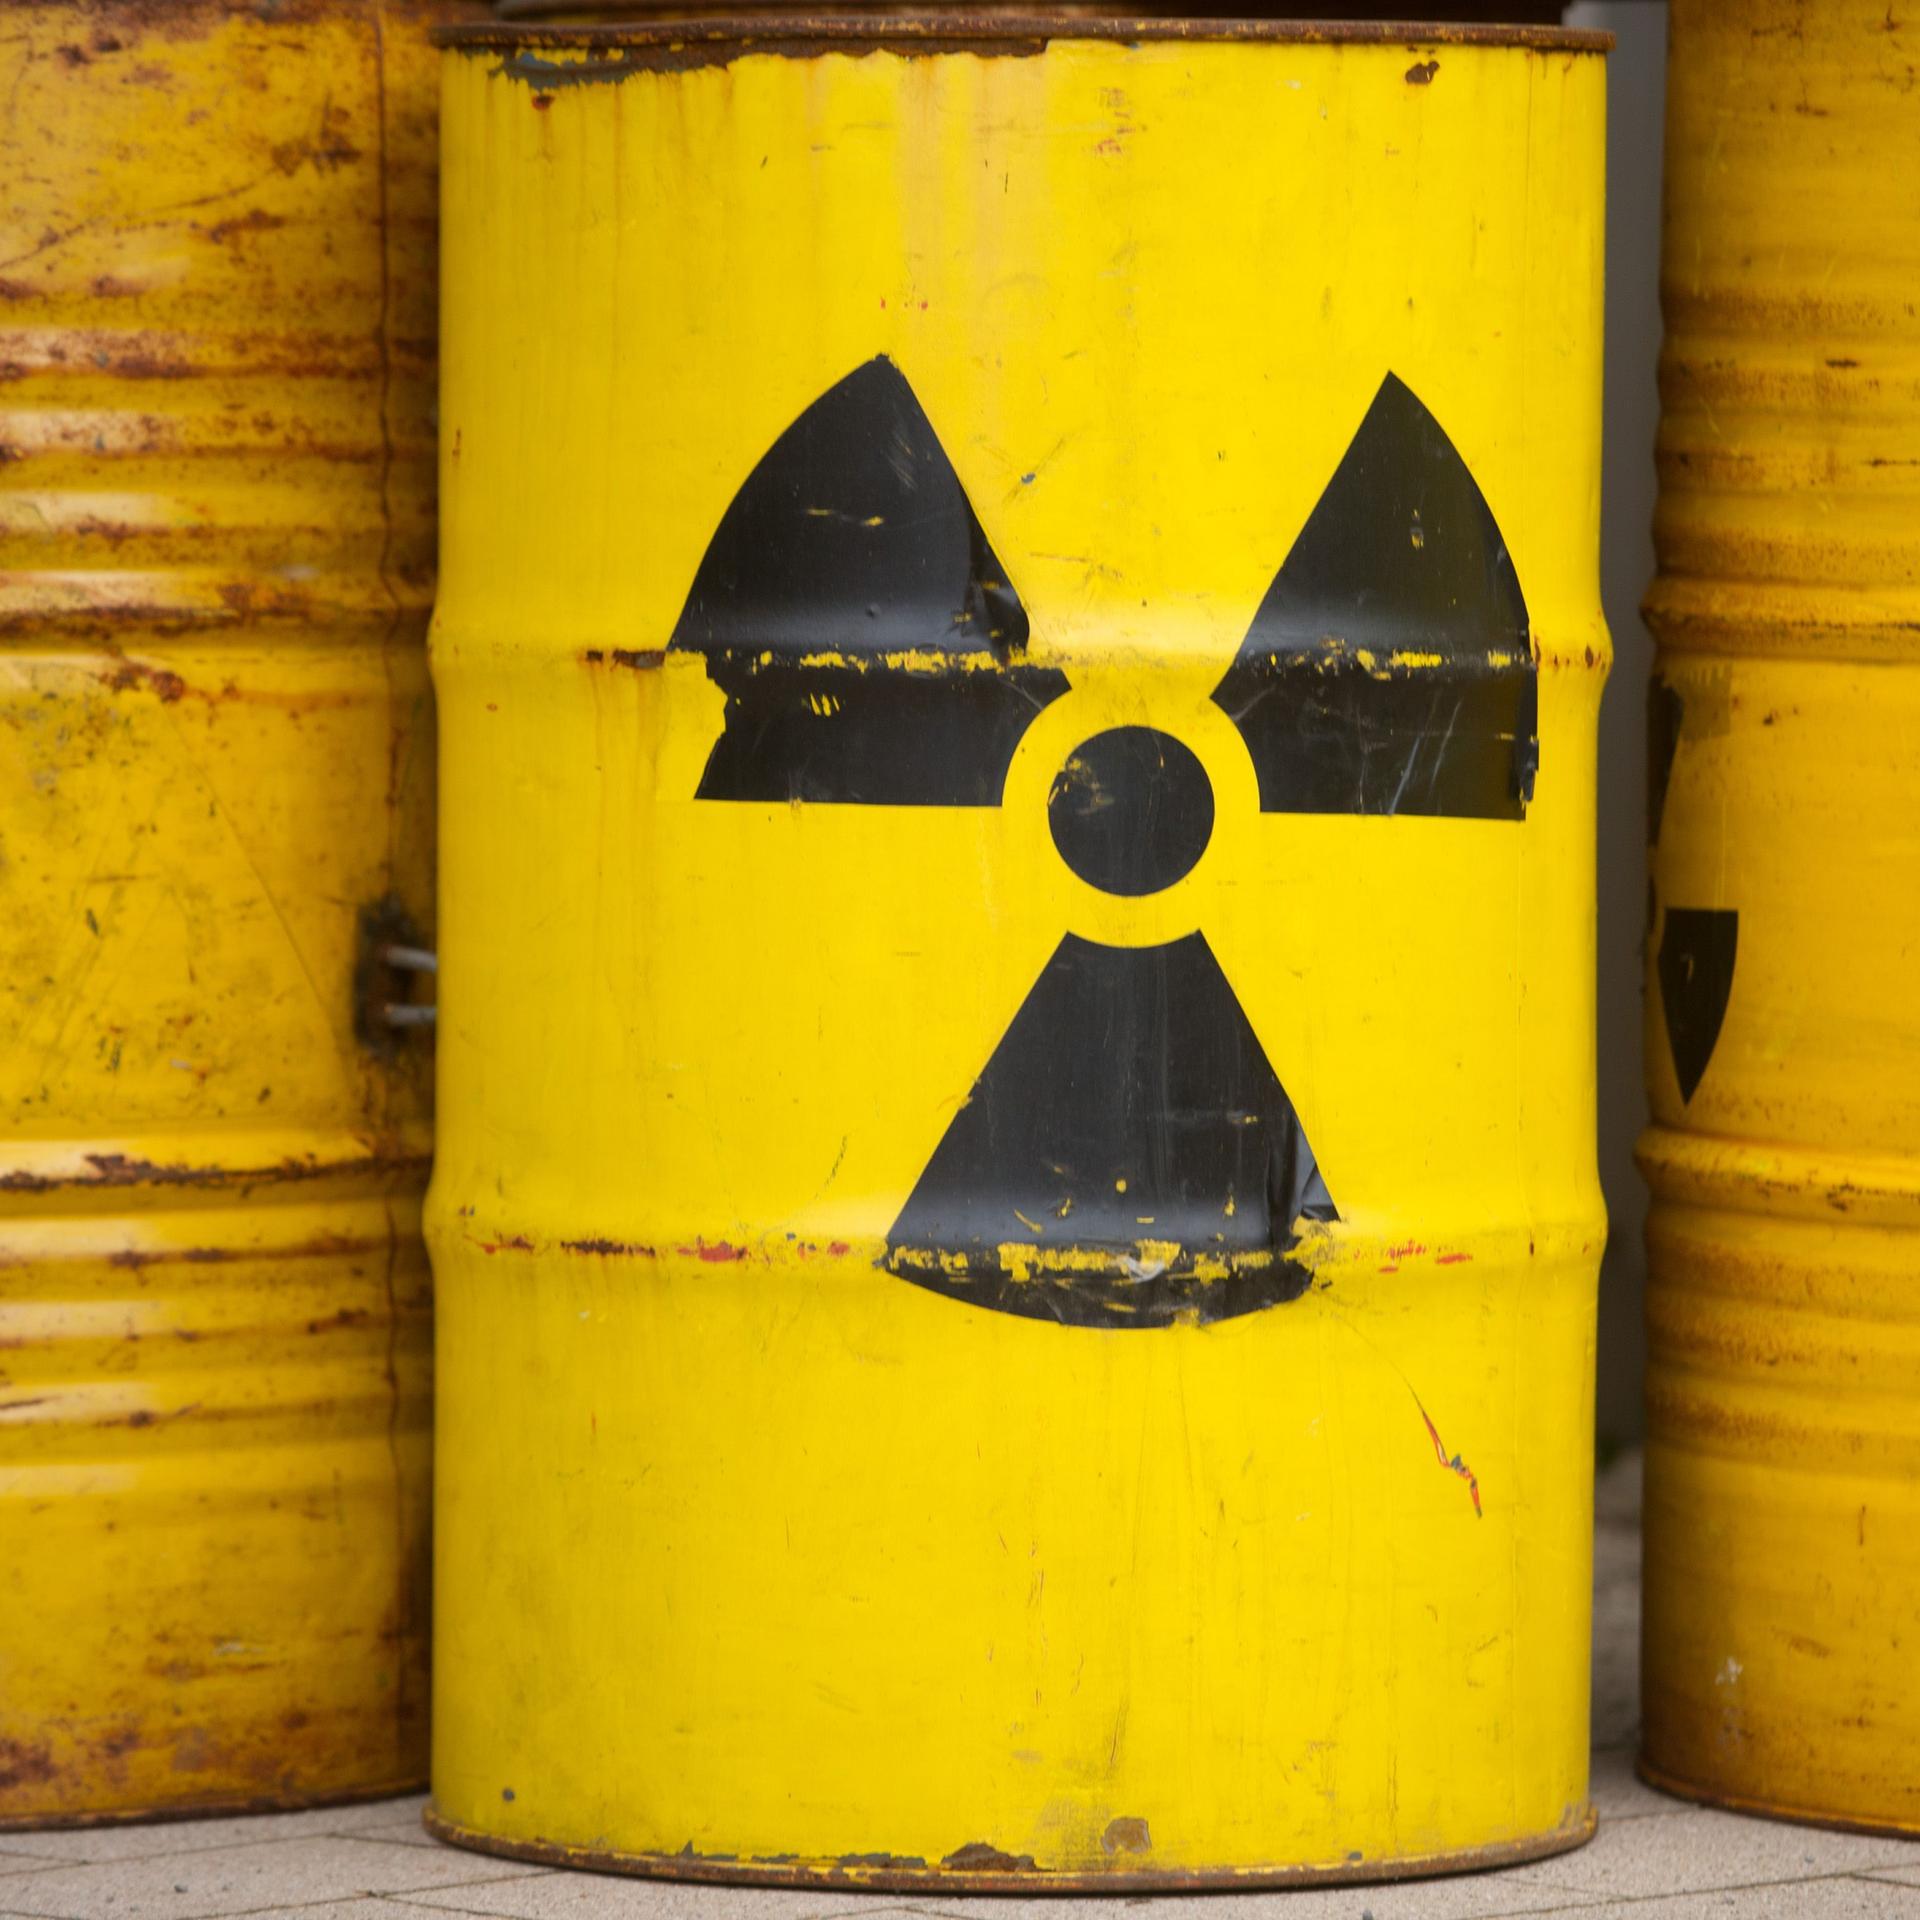 Zu sehen sind gelbe Tonnen mit dem Radioaktiv-Zeichen.